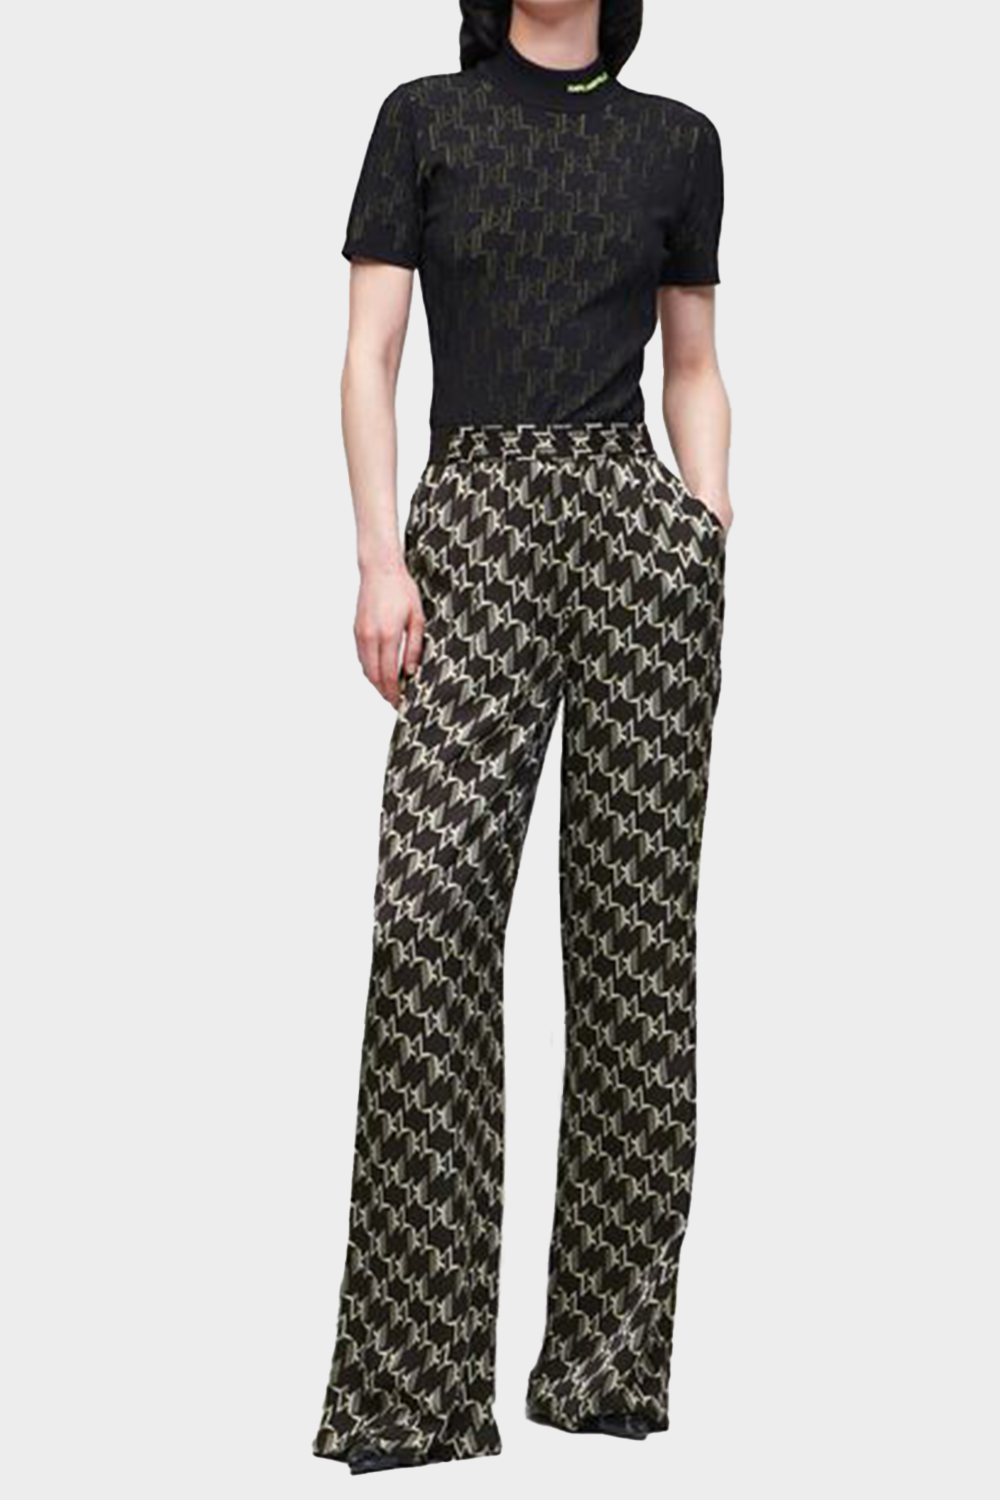 מכנסי פדלפון לנשים בצבע שחור KARL LAGERFELD Vendome online | ונדום .